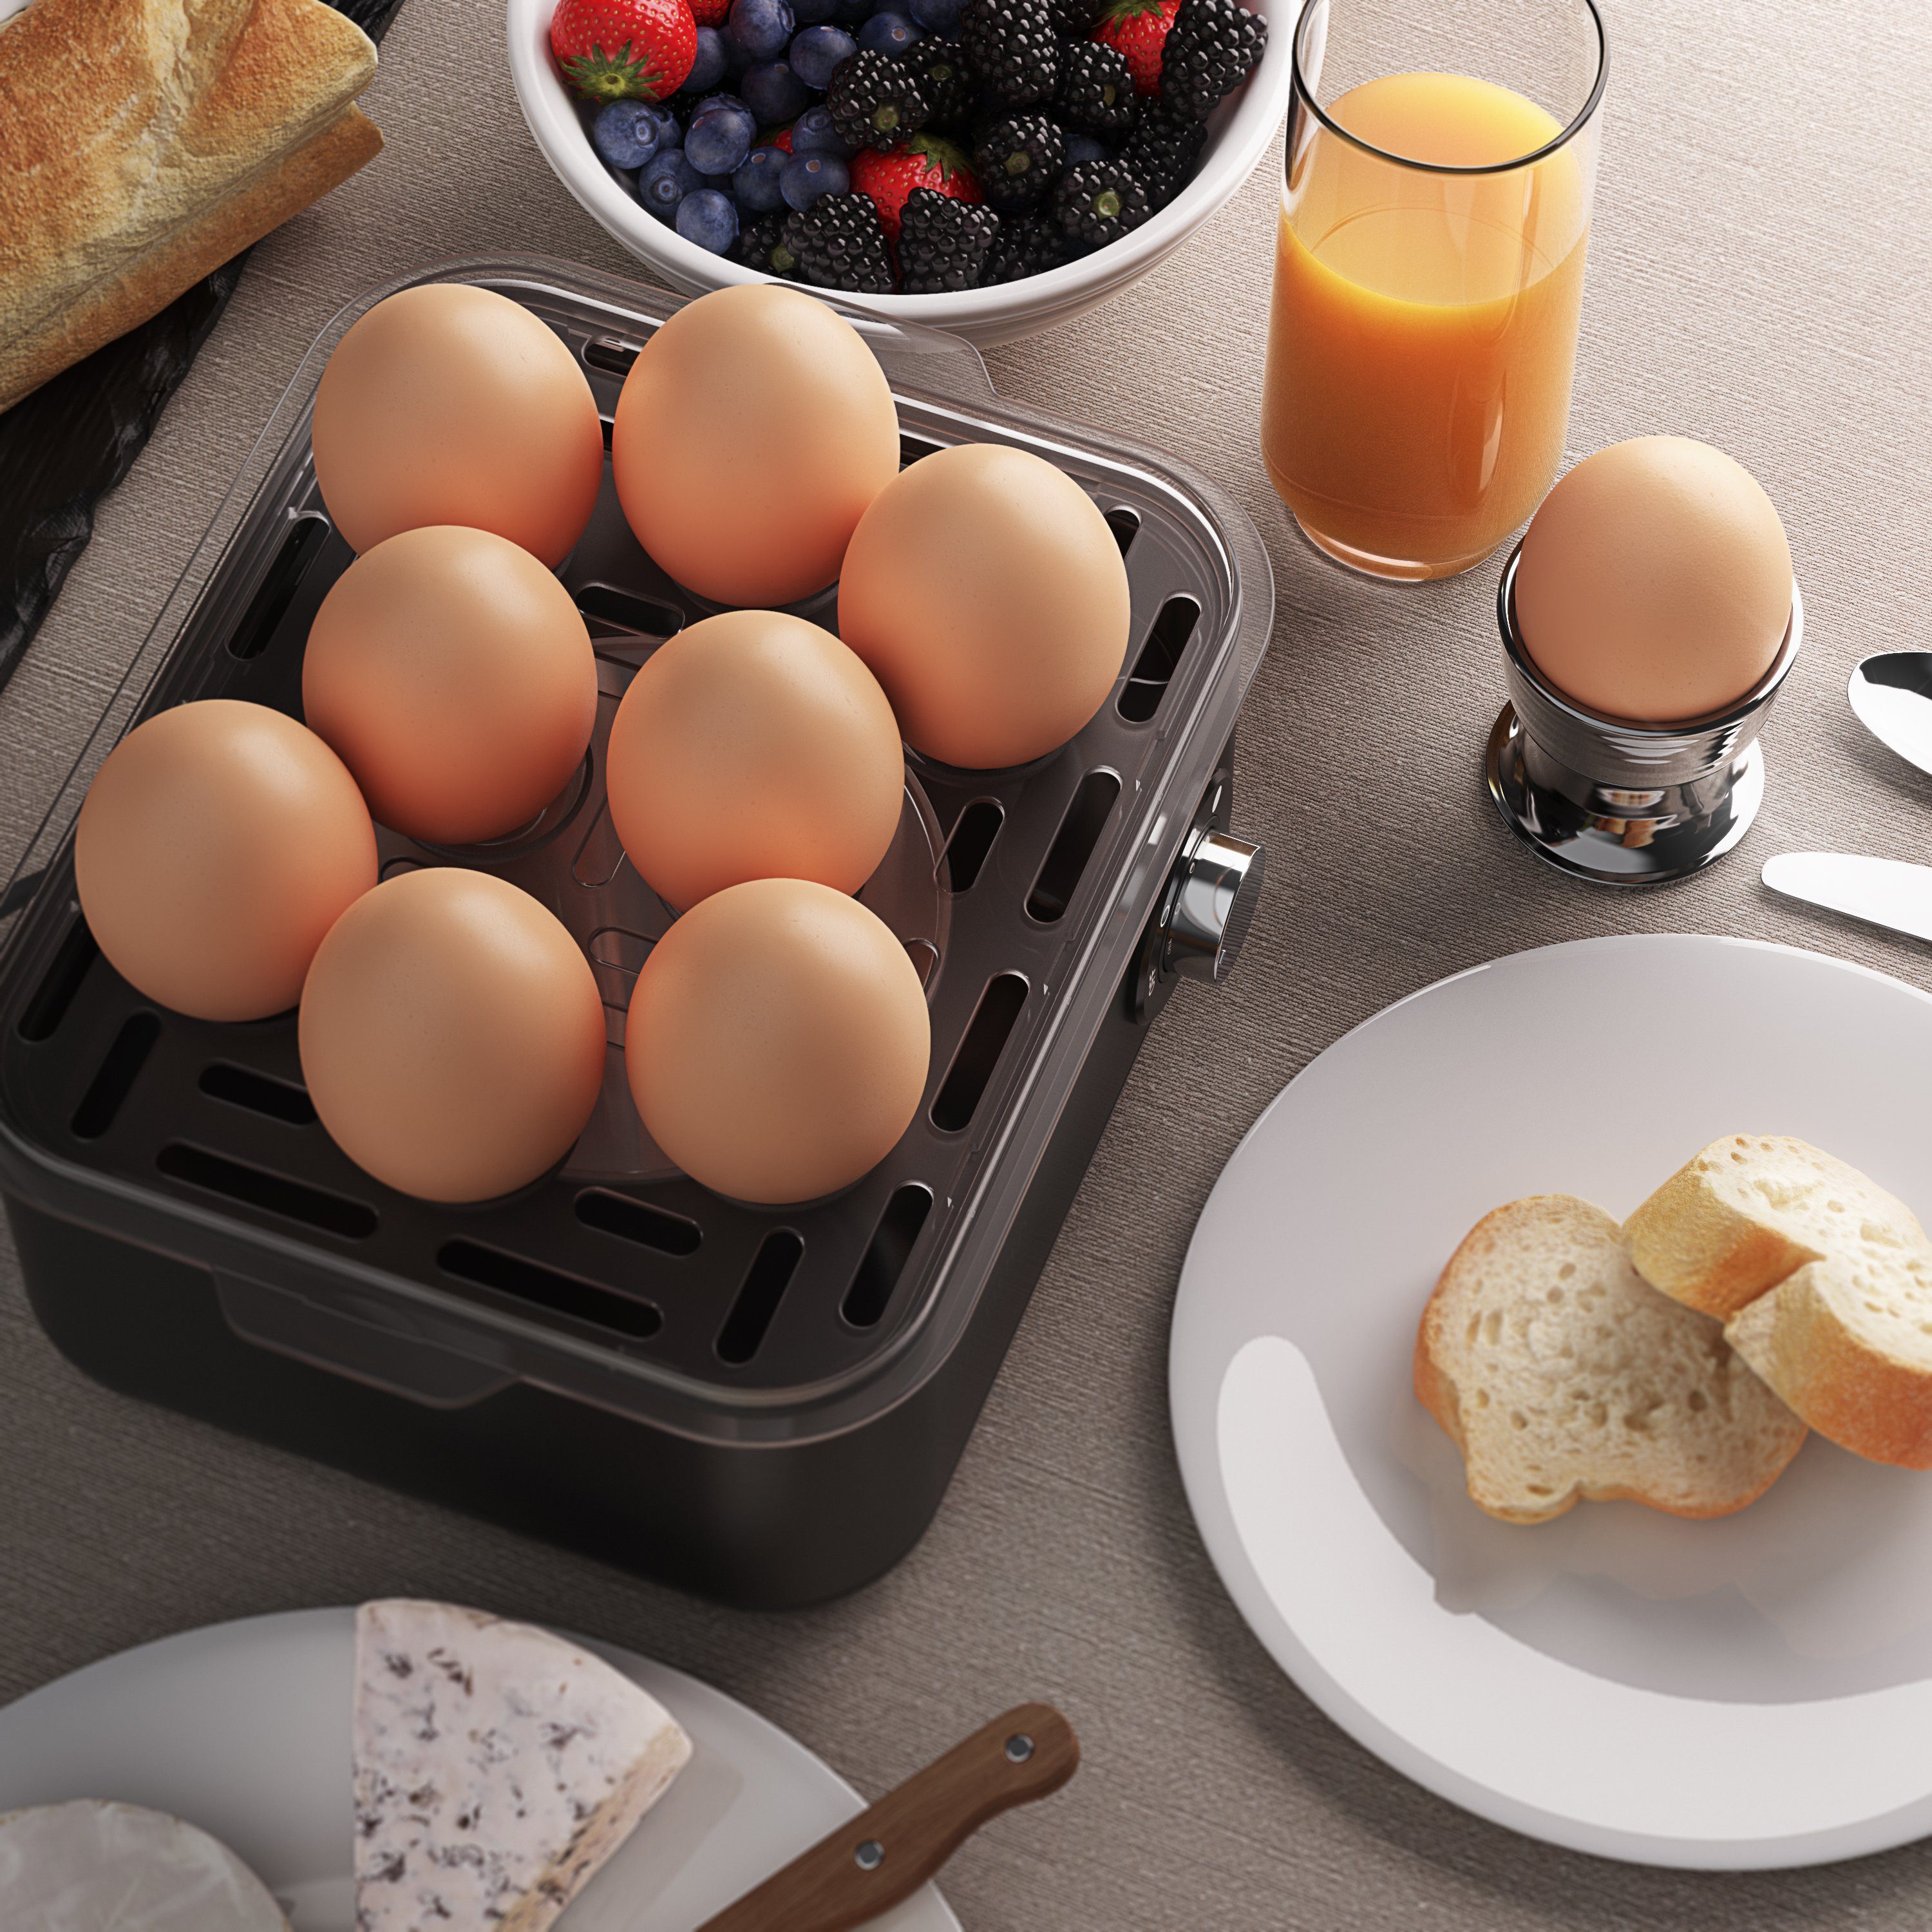 Arendo Temperaturwahl Grau Eierkocher, & Wasserkocher Frühstücks-Set 1,5l mit (2-tlg), Edelstahl,